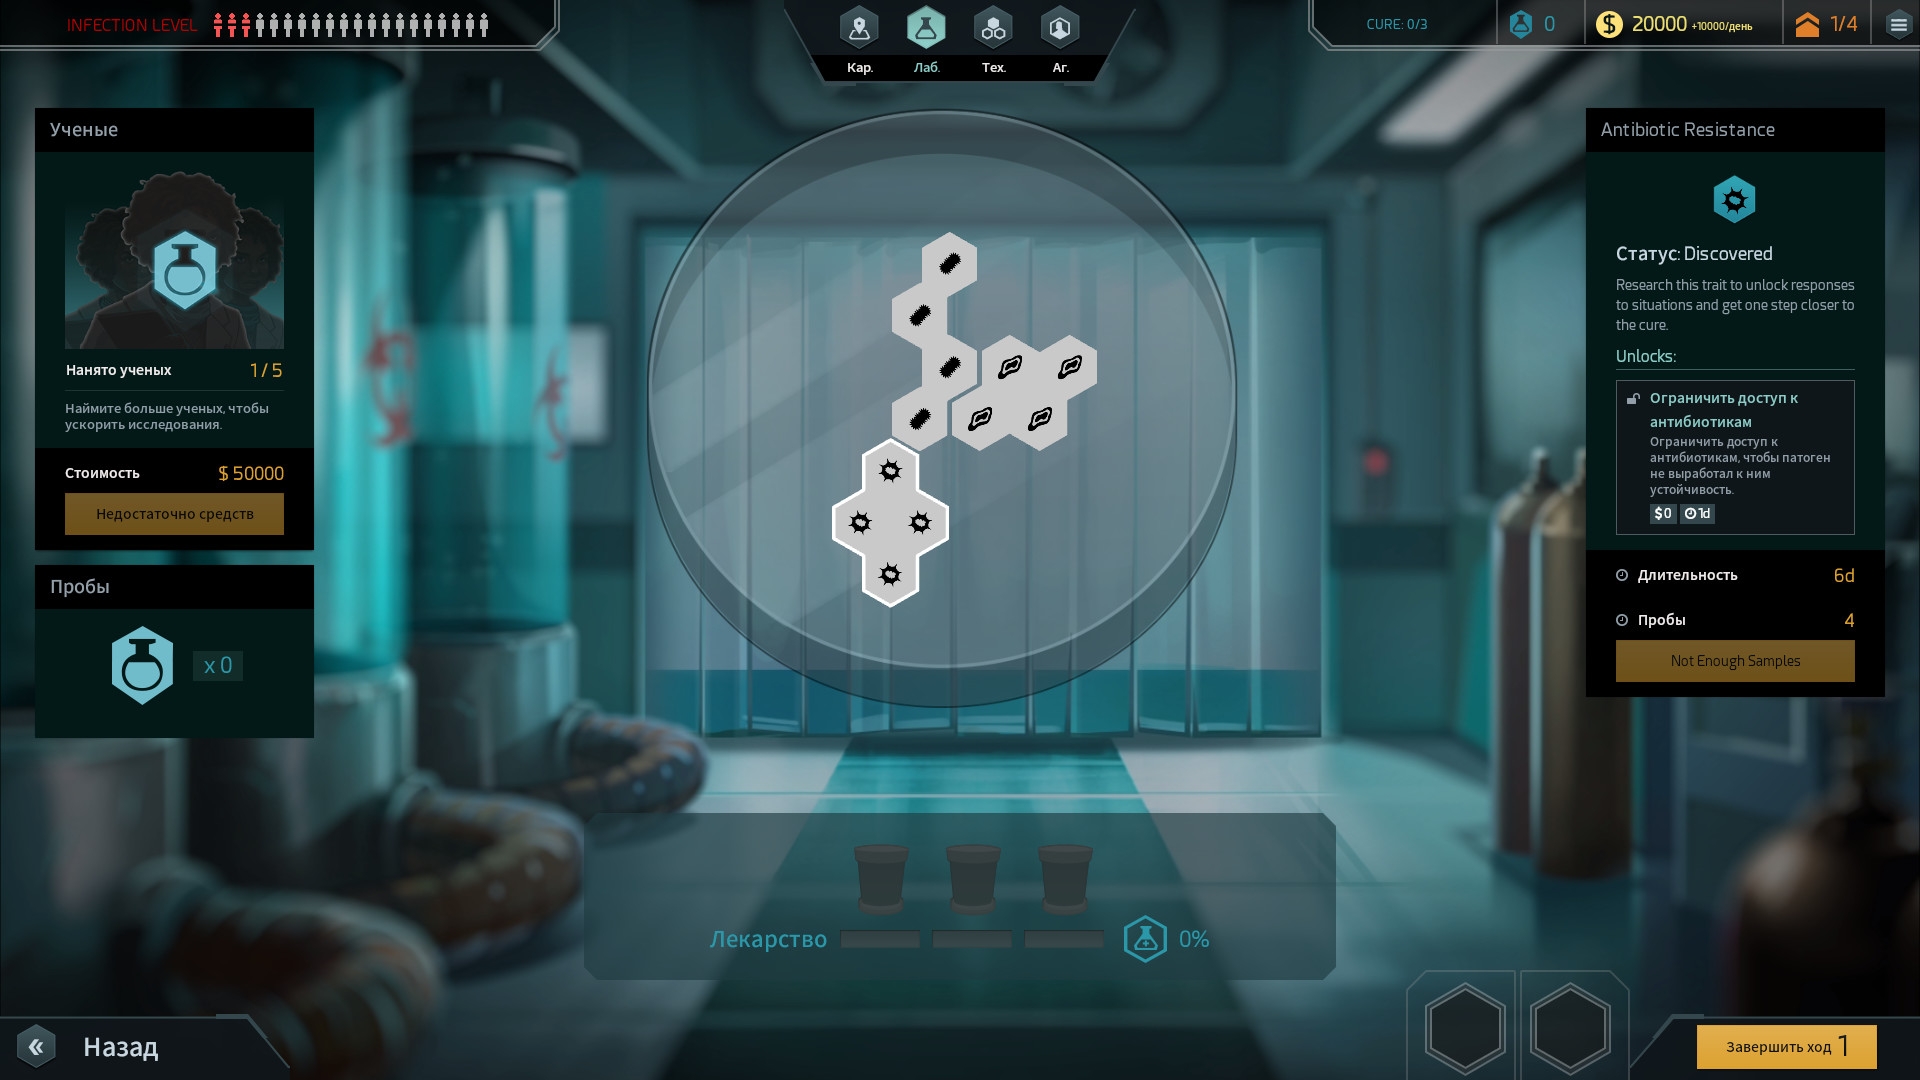 Скриншот из игры Quarantine (2017) под номером 6